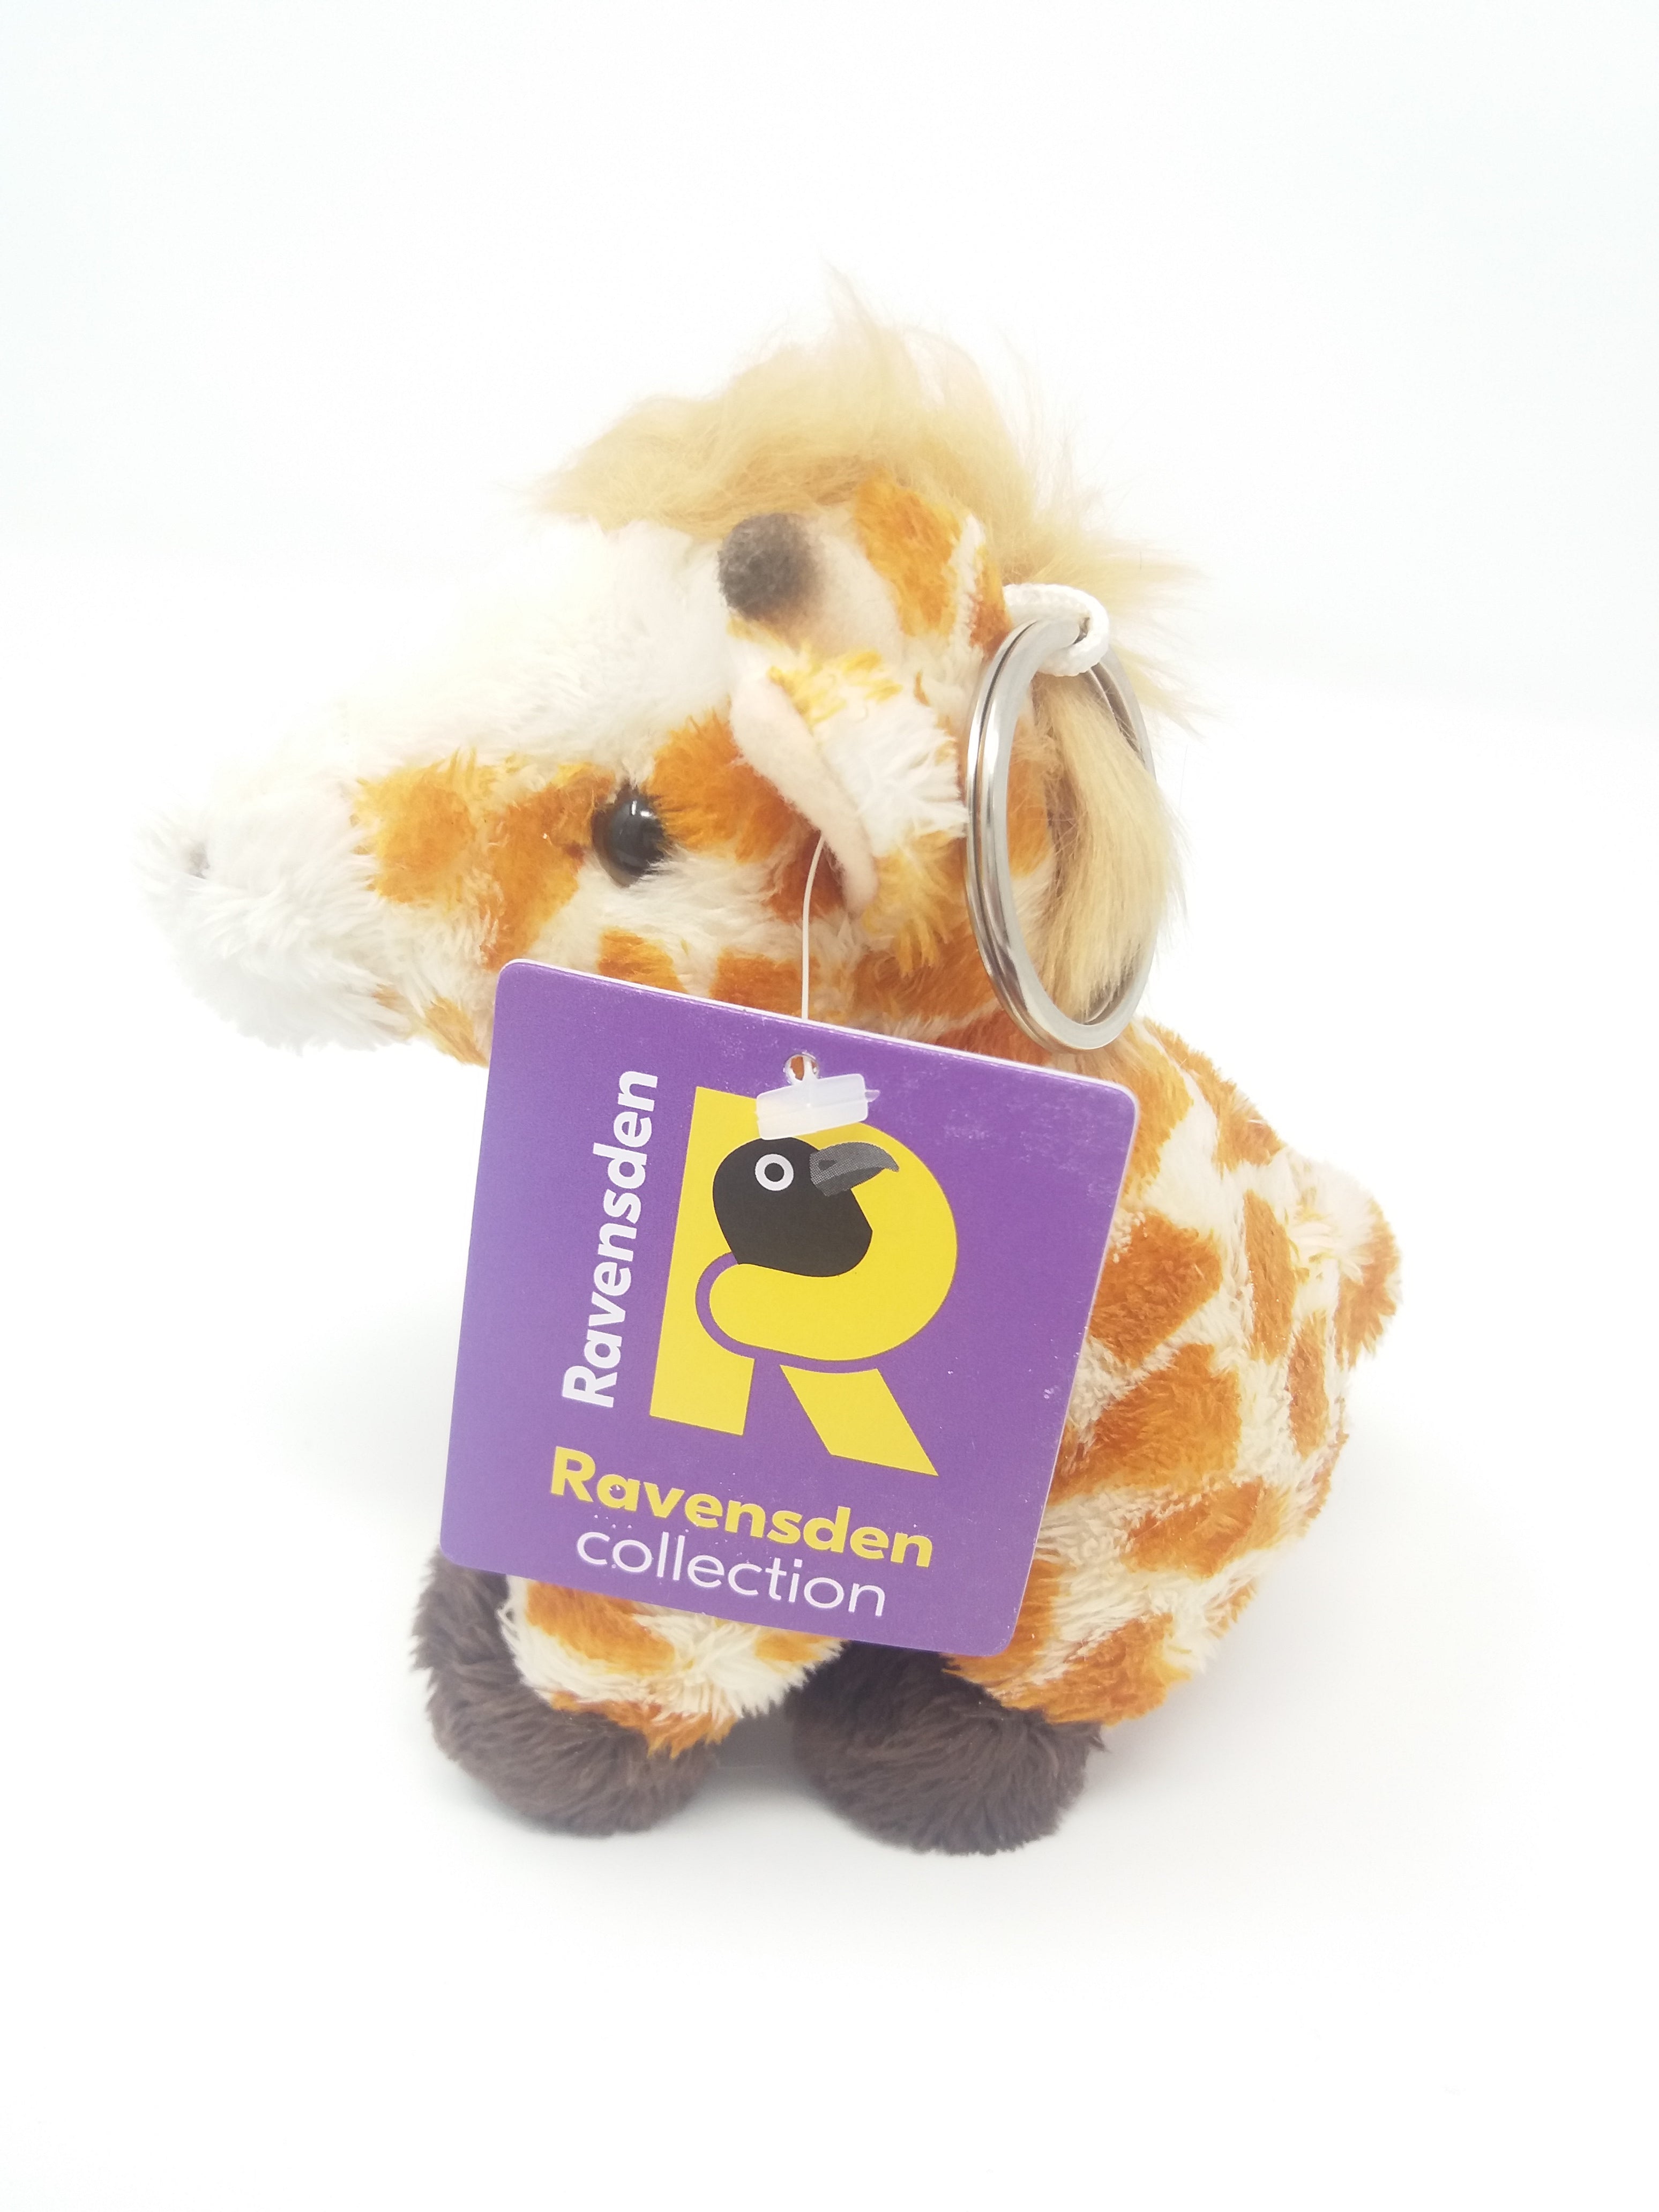 Ravensden Soft Toy Giraffe Keyring 10cm